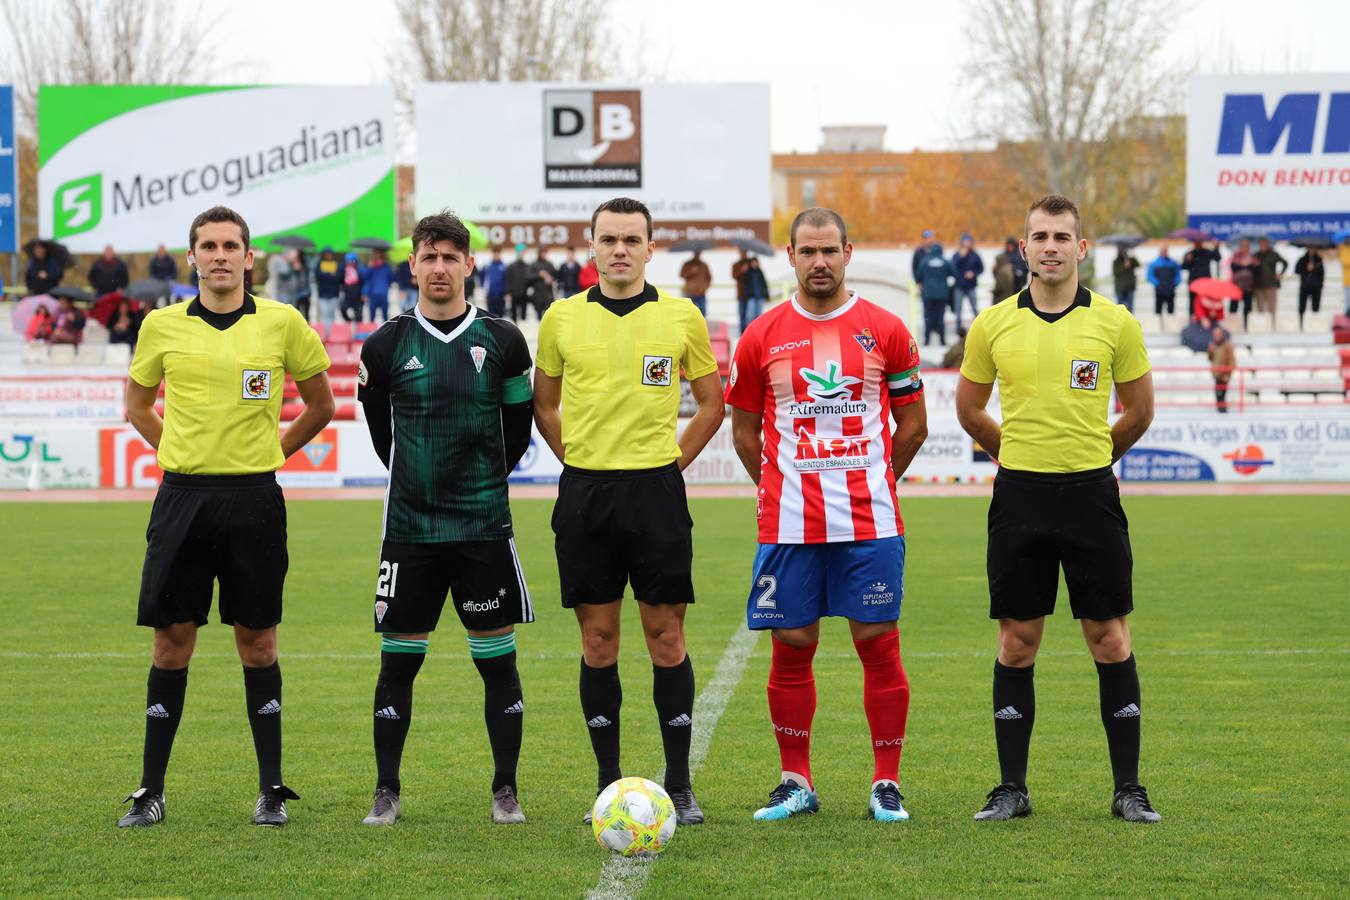 El Don Benito-Córdoba CF, en imágenes